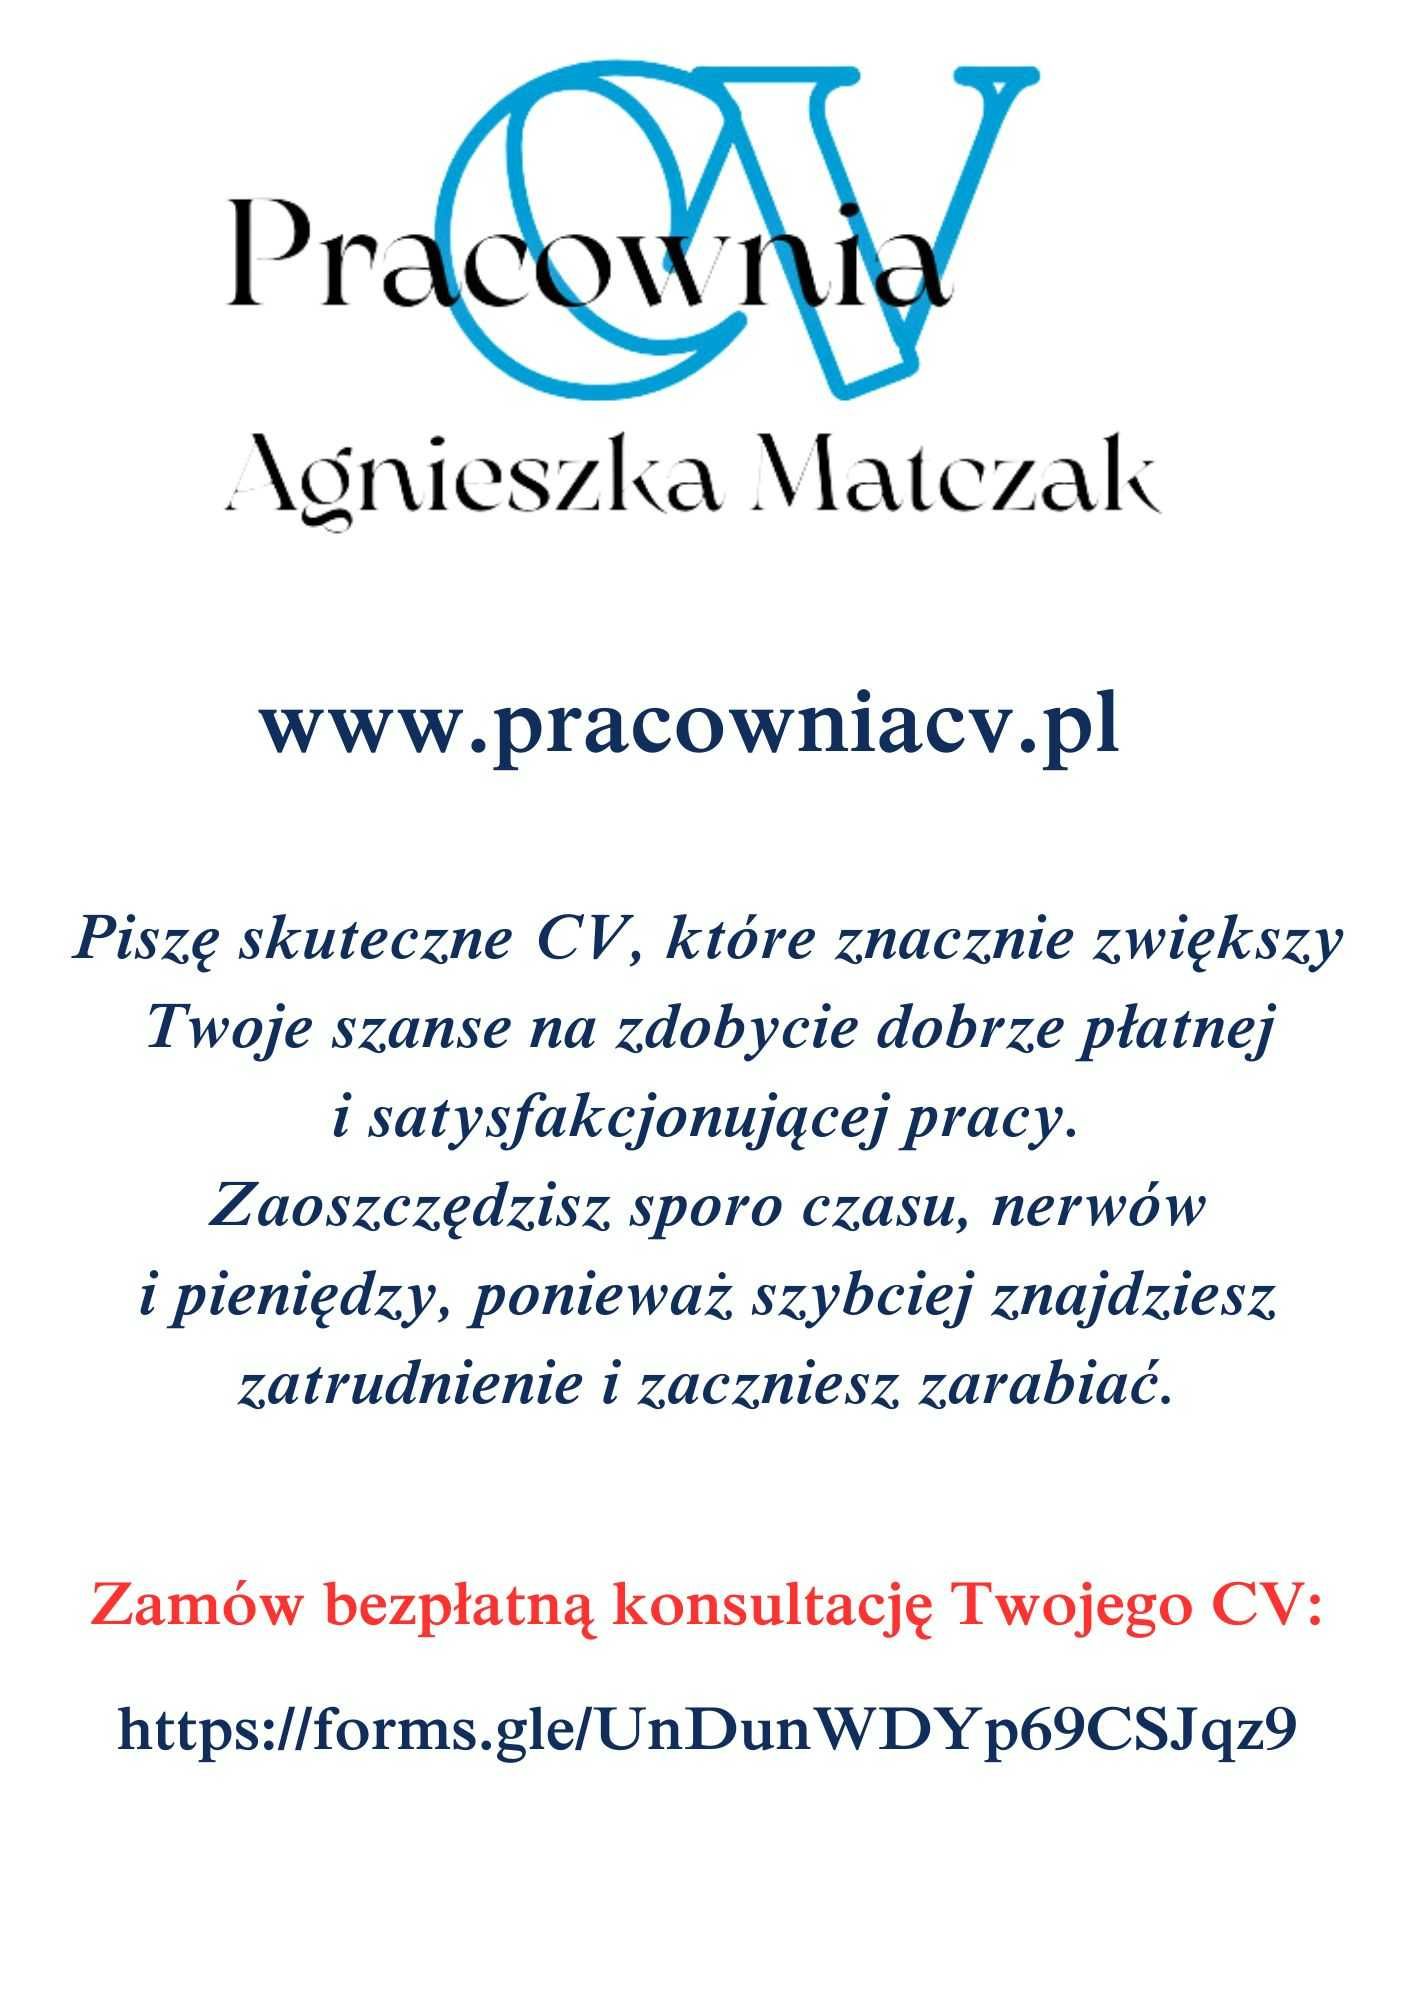 Pisanie CV/cała Polska/zapłata po/4 gwarancje/bezpłatna konsultacja